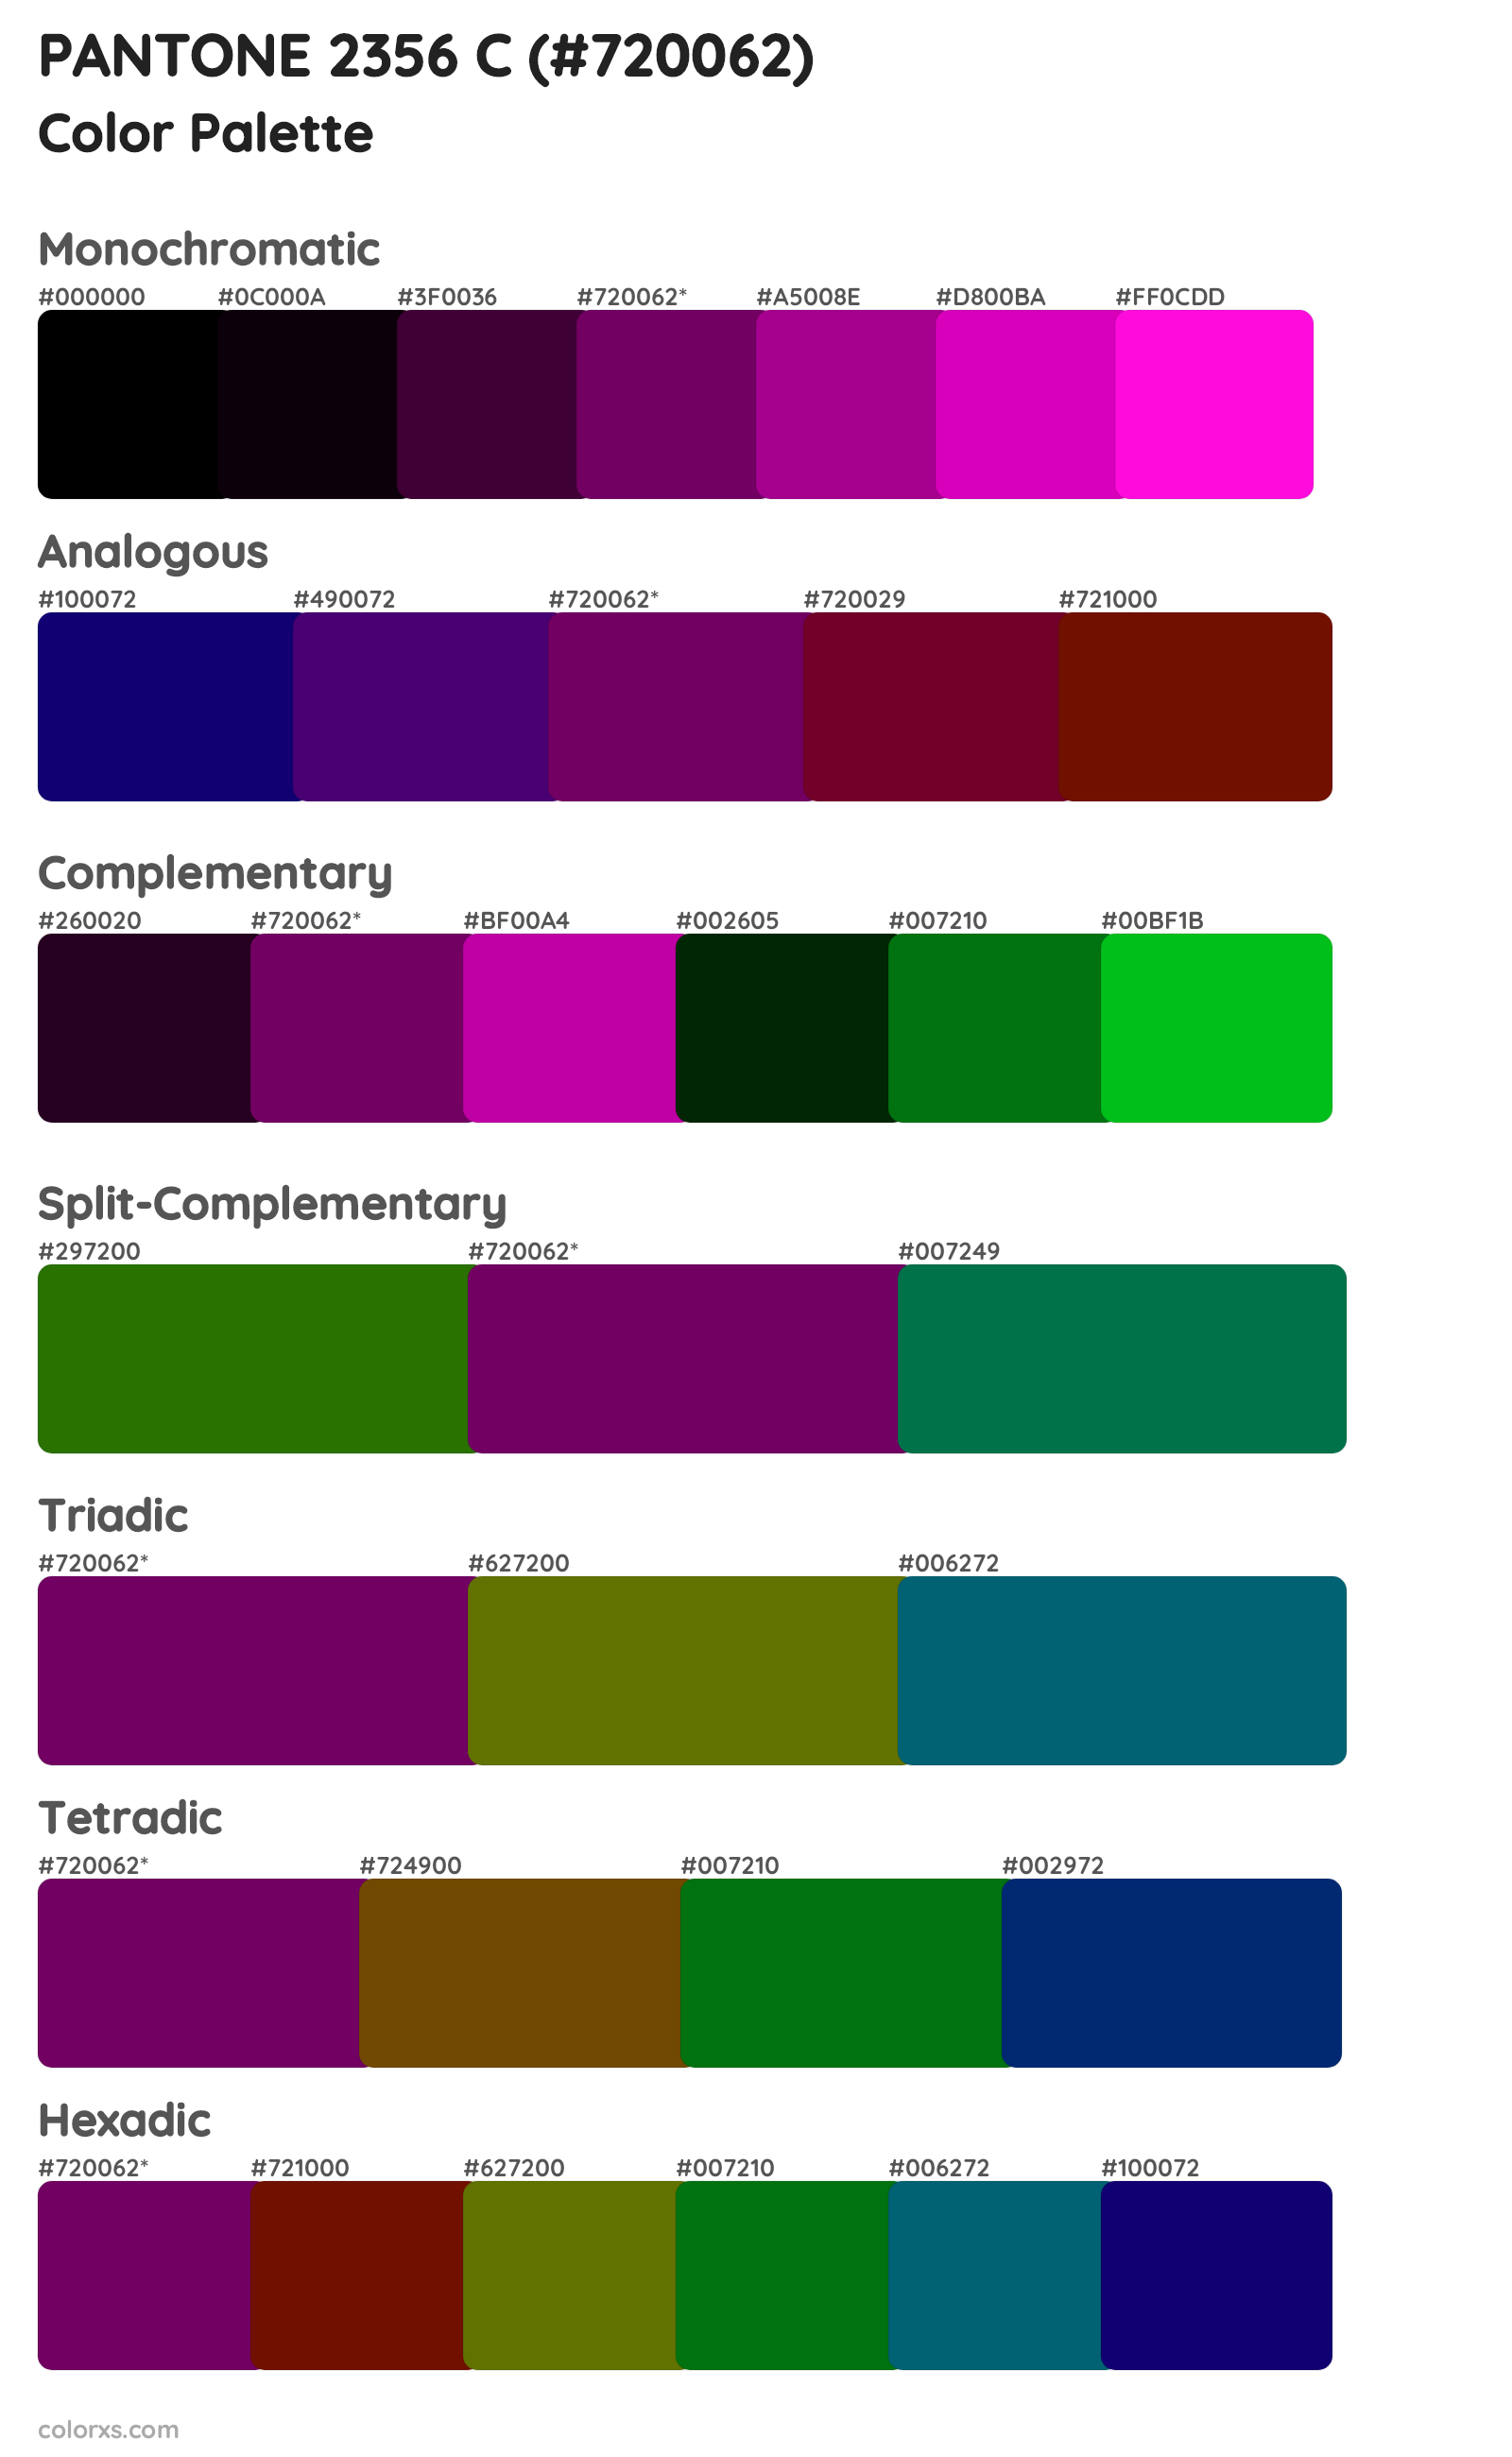 PANTONE 2356 C Color Scheme Palettes